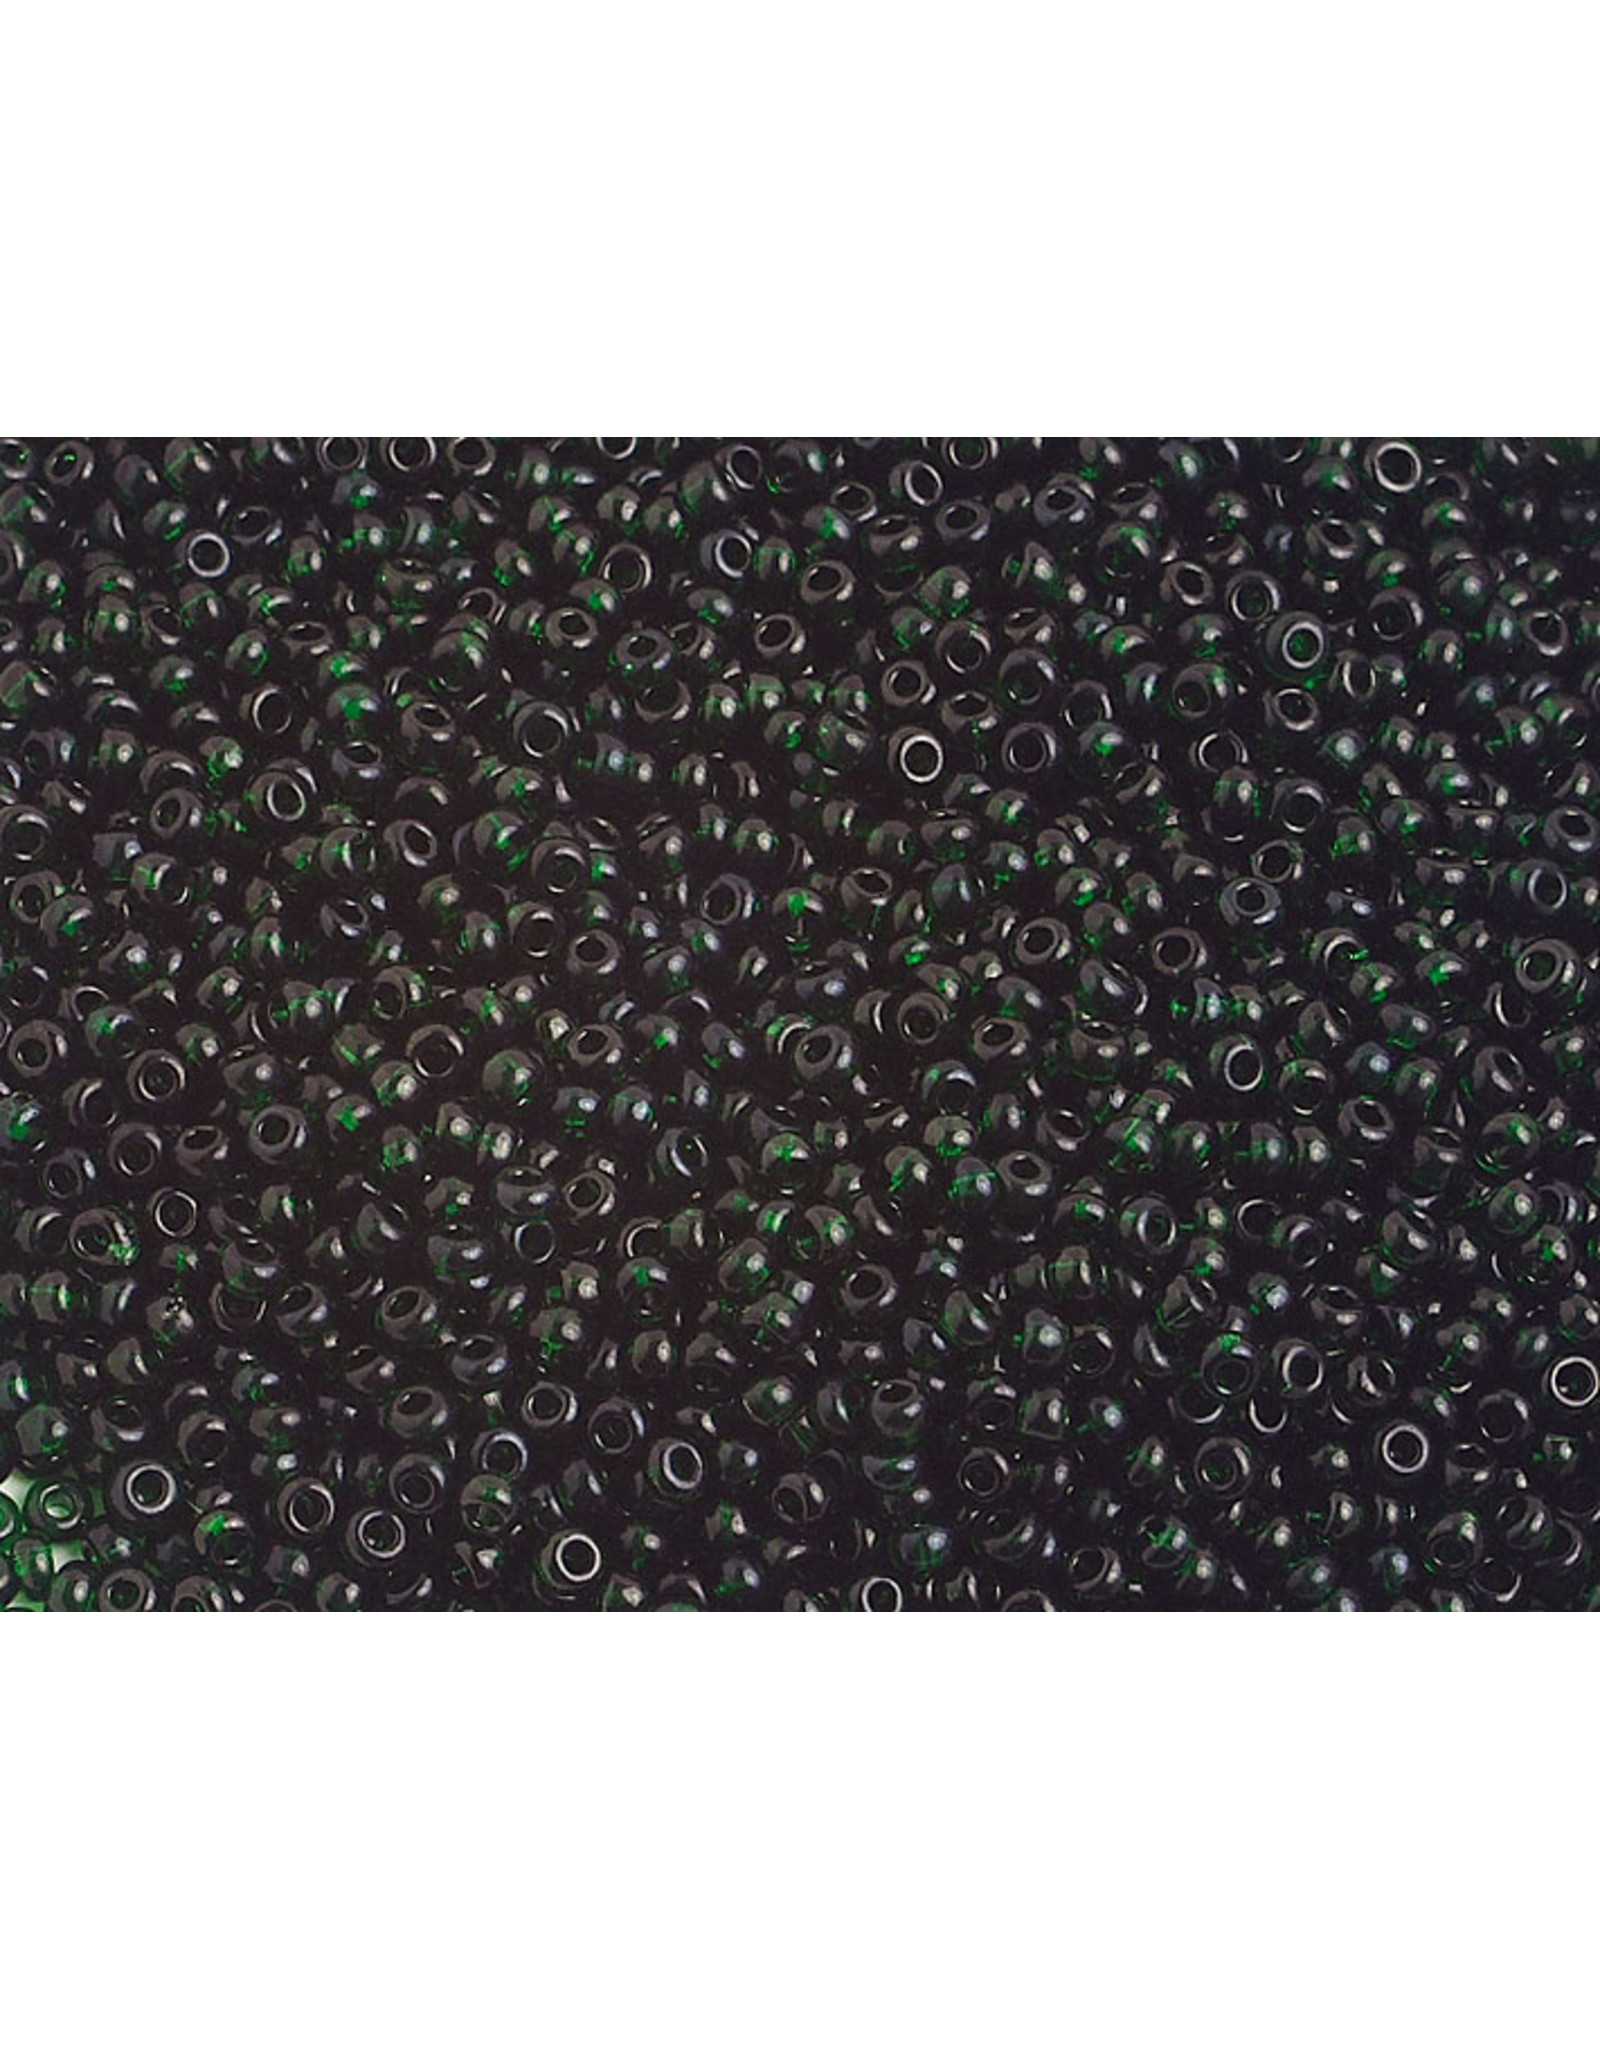 Czech 1176 10   Seed 20g Transparent Dark Green